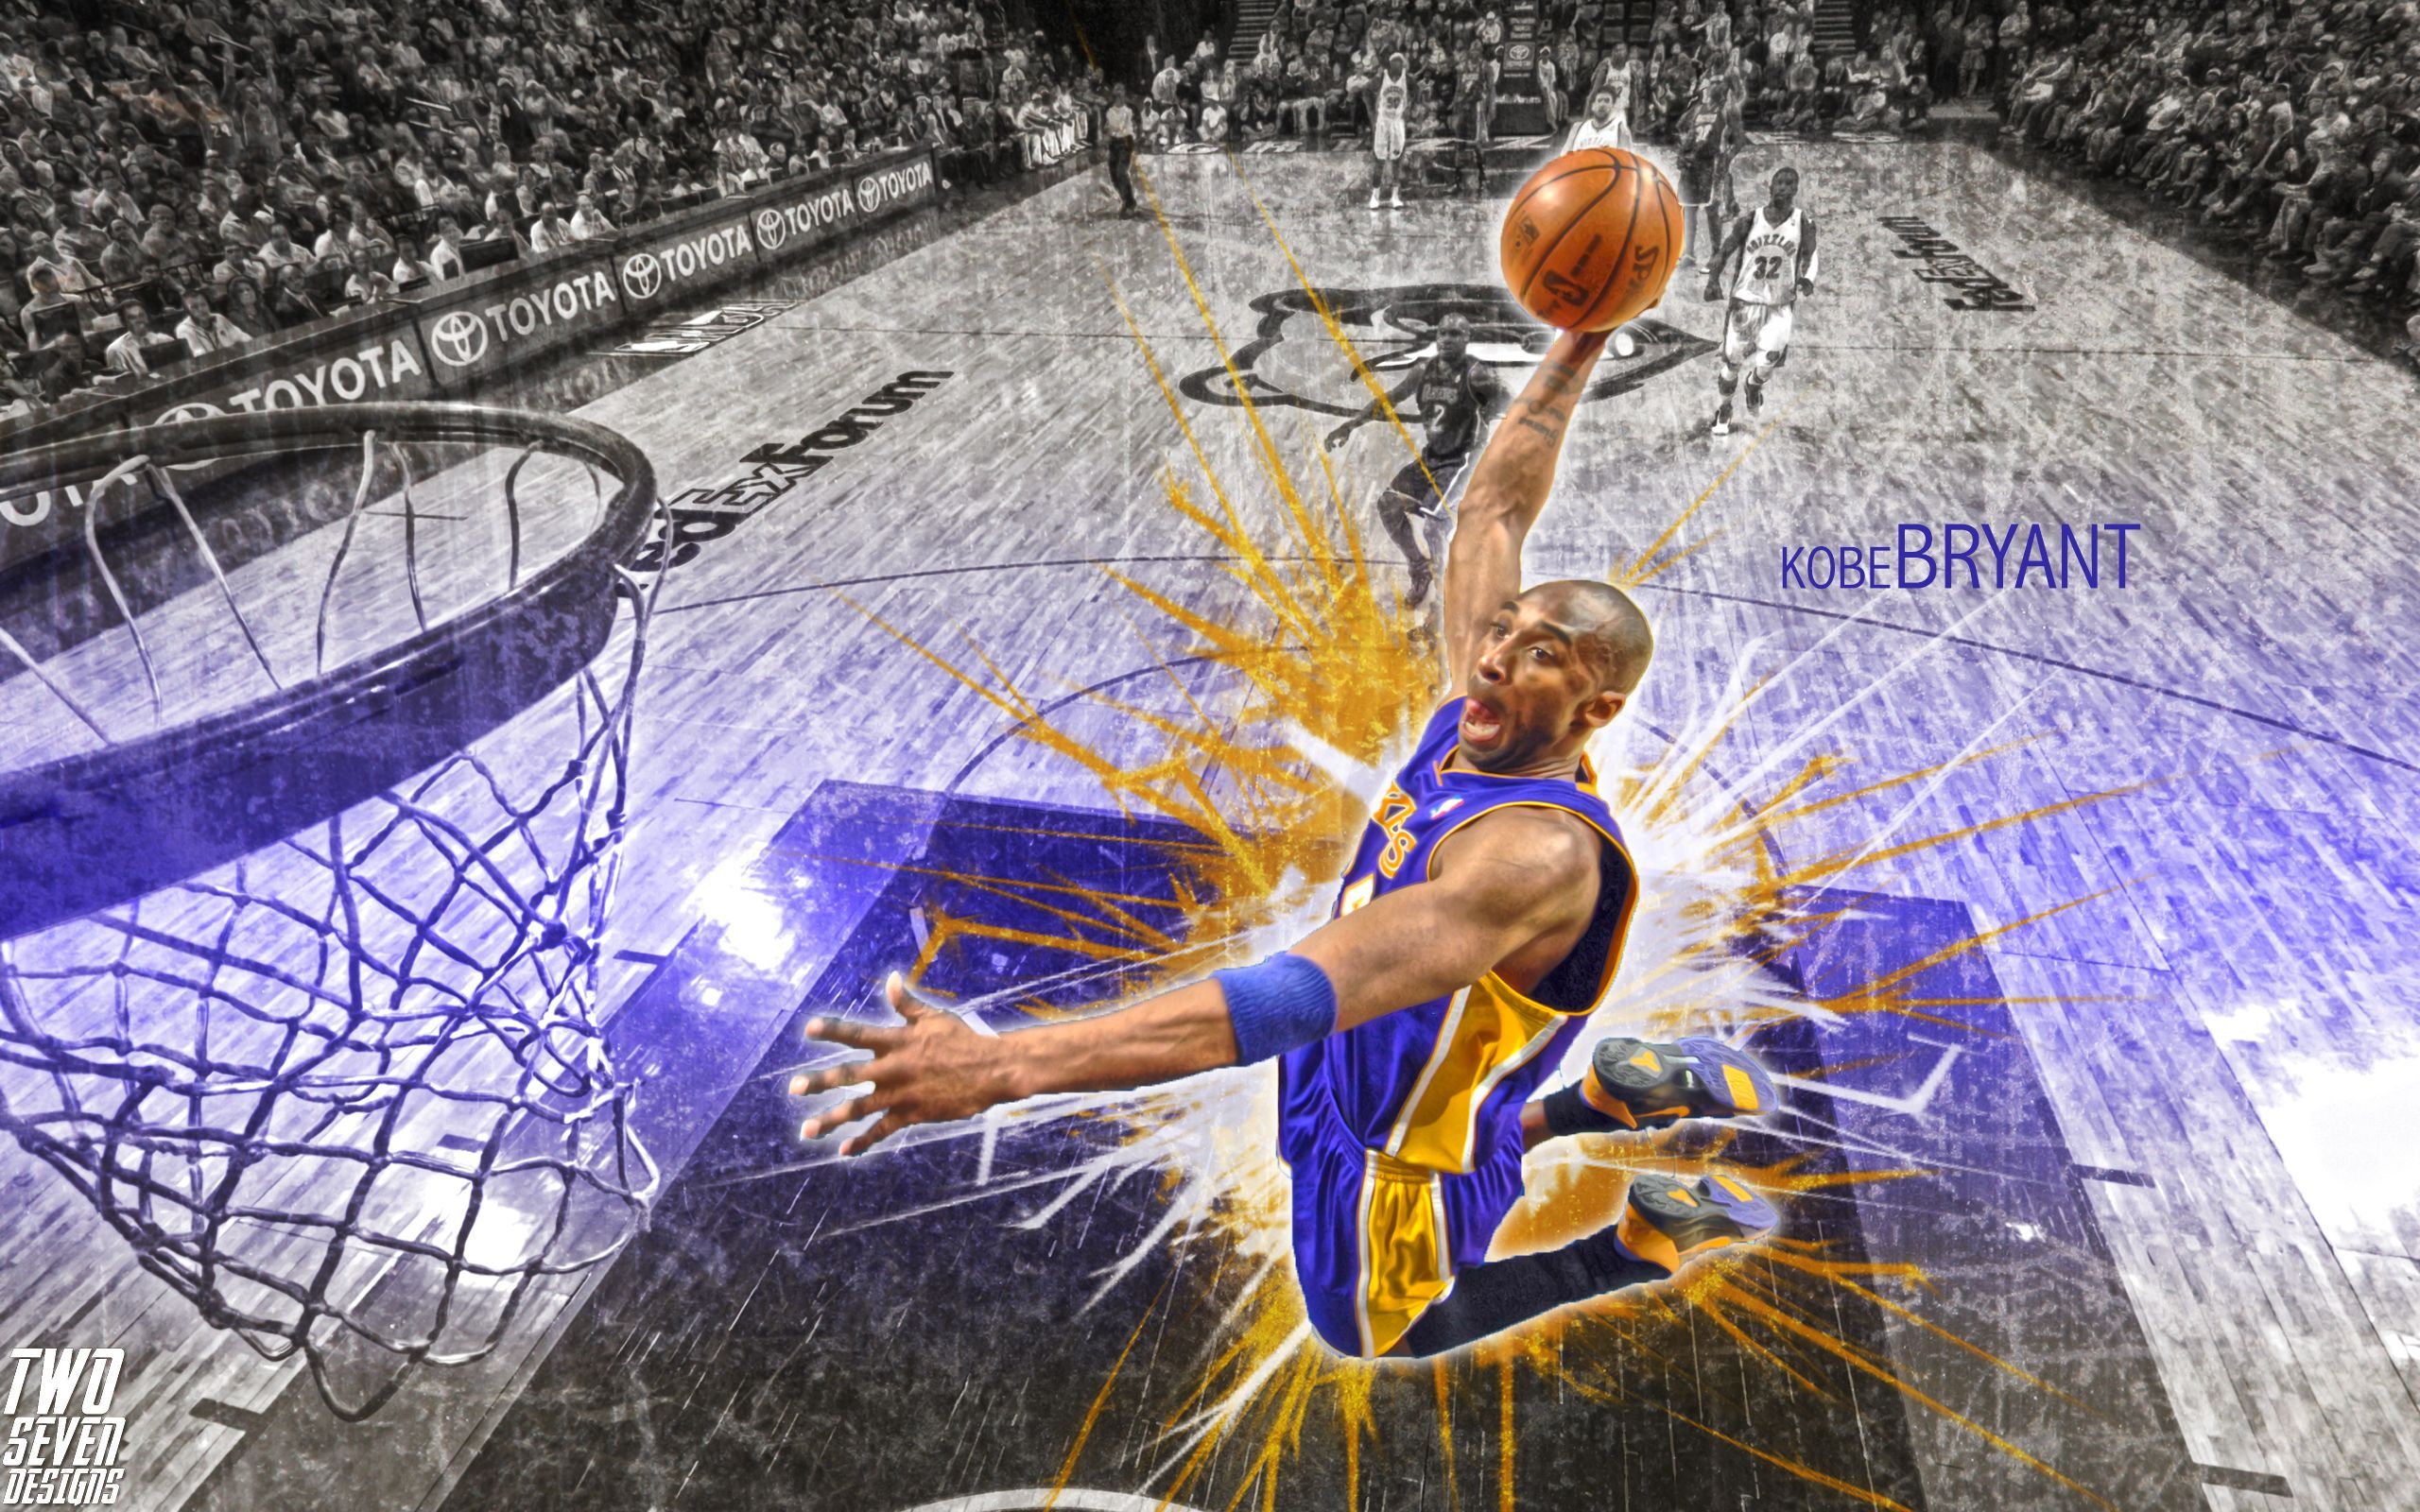 Download Kobe Bryant Dunk Wallpaper CT21 > Mlebu. Kobe bryant dunk, Kobe bryant, Kobe